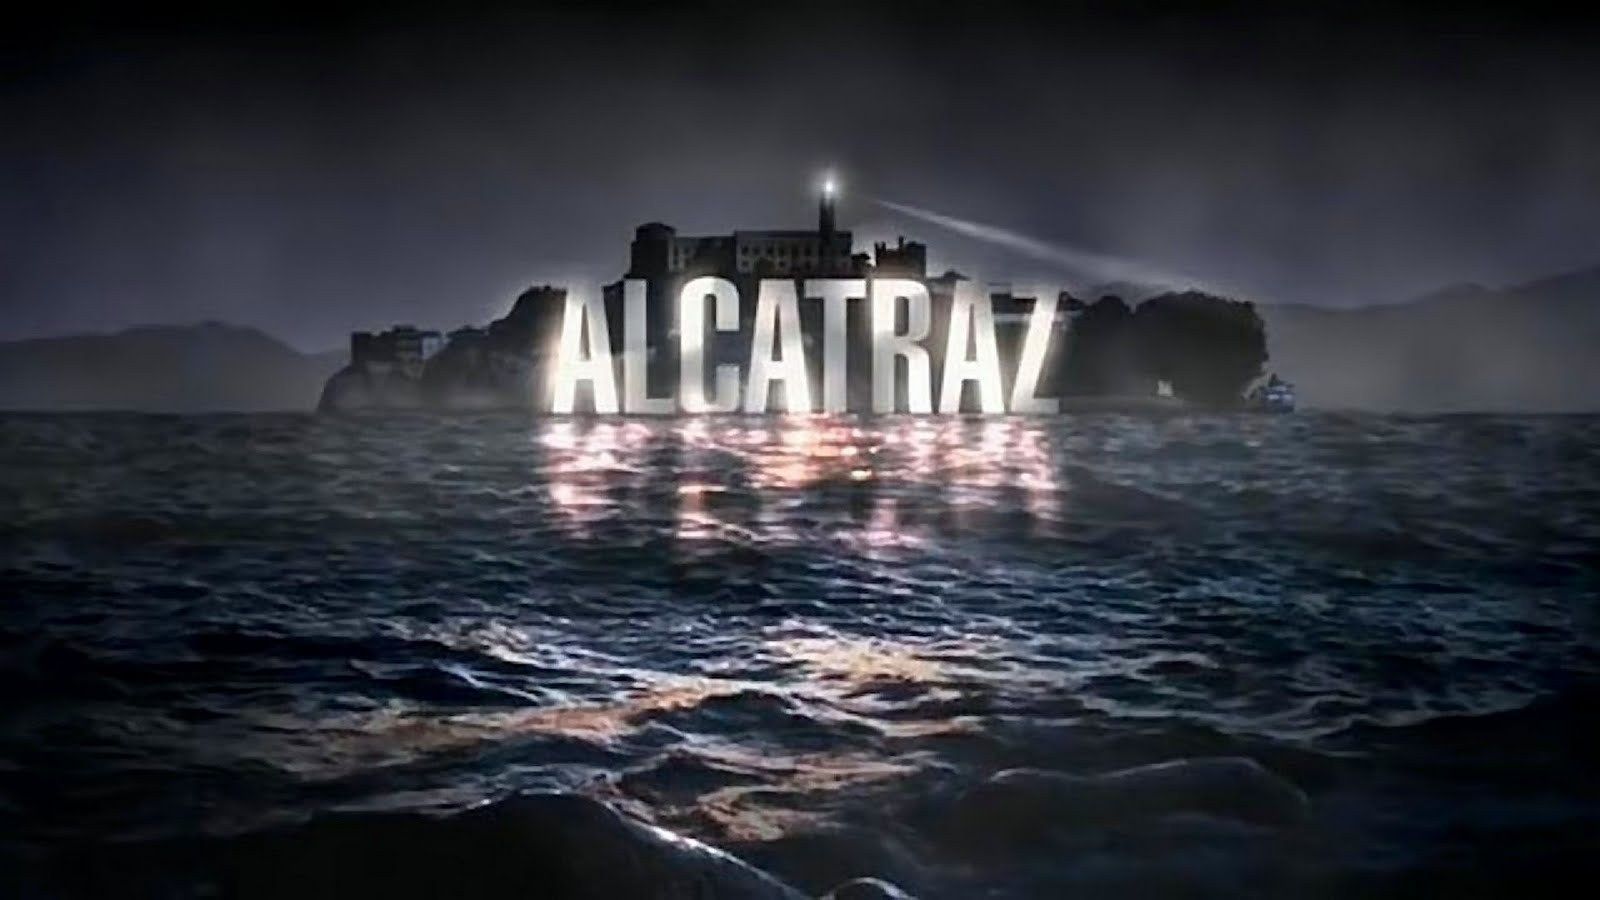 image with Alcatraz show logo